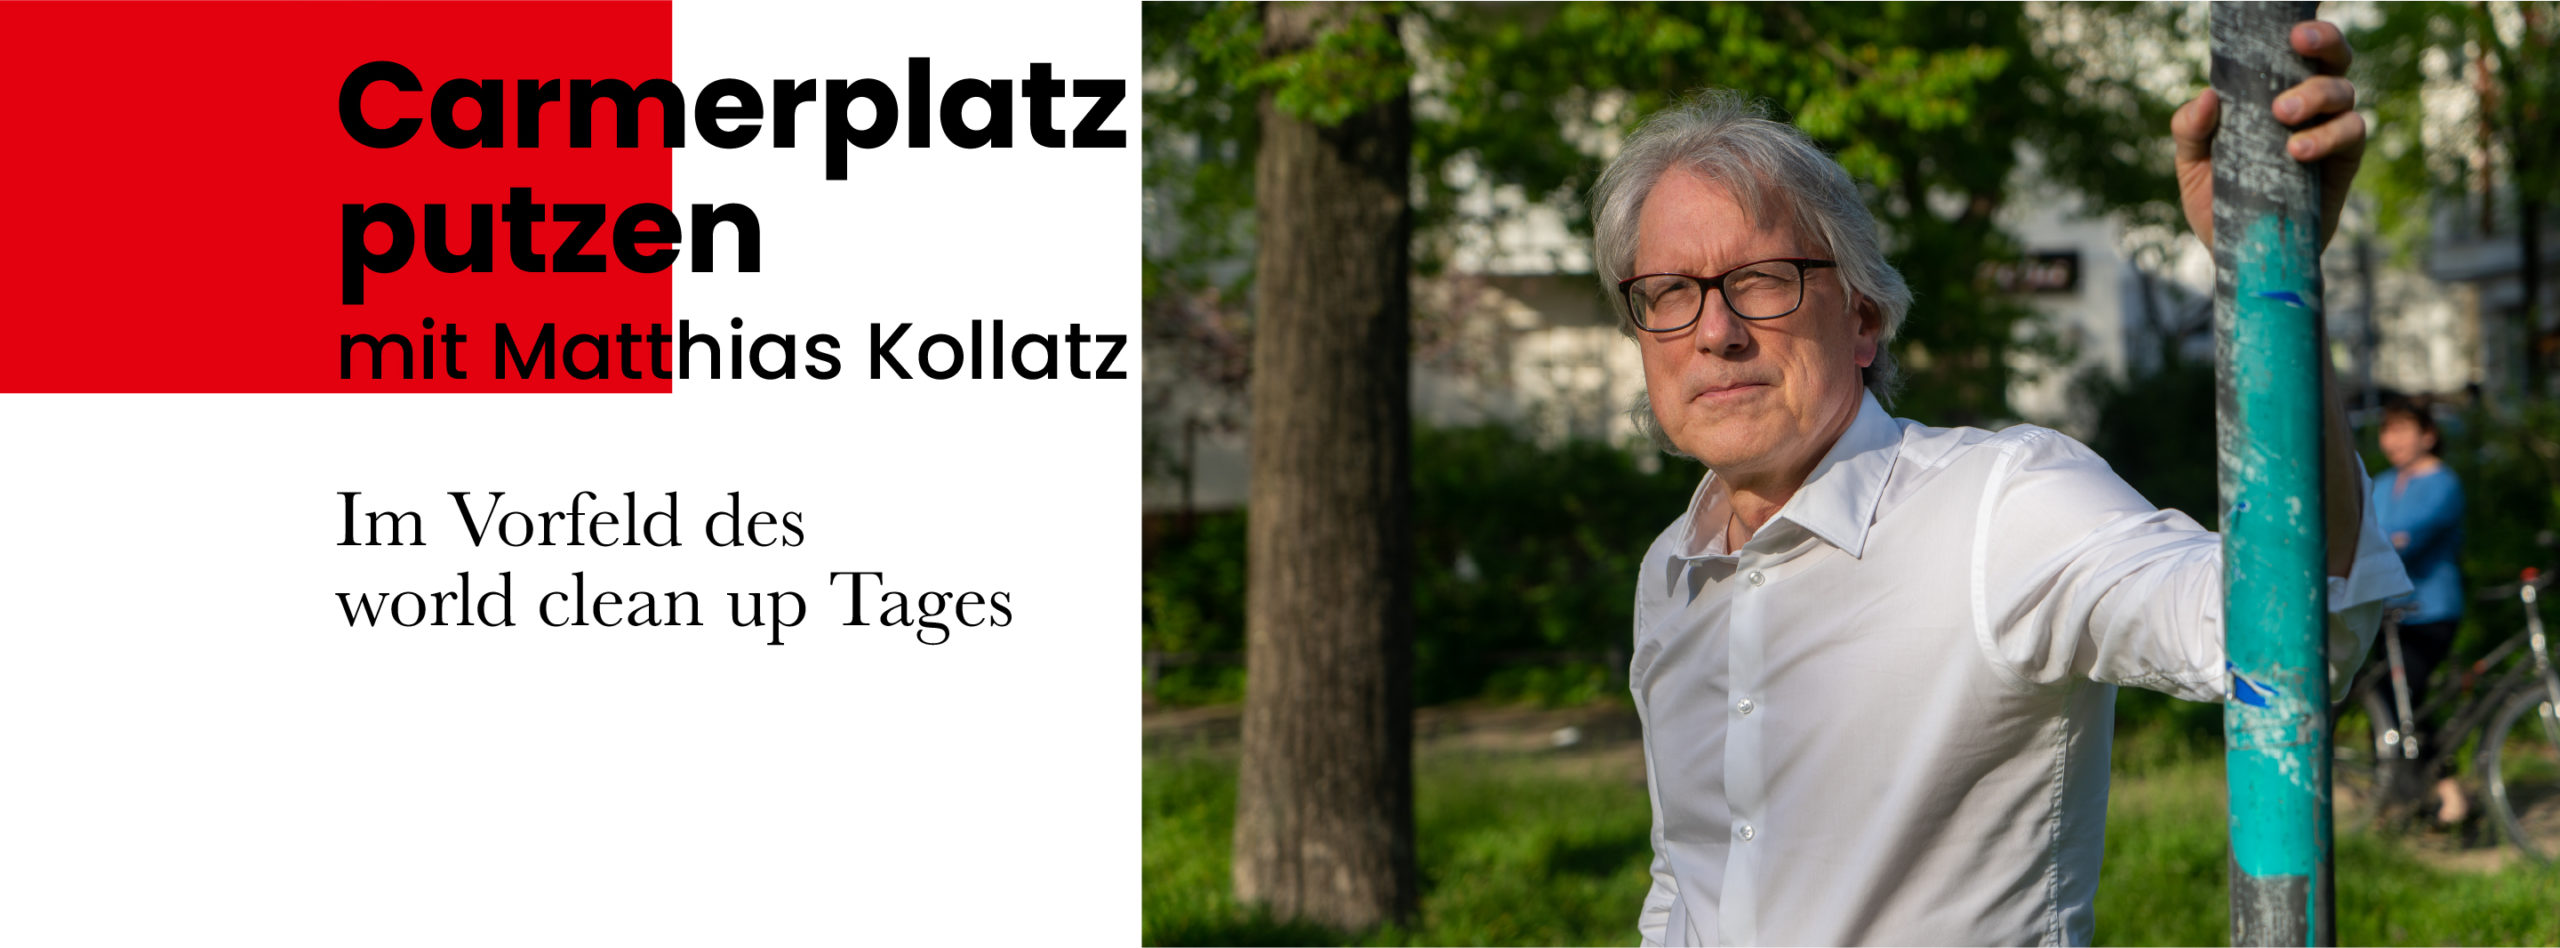 Carmerplatz putzen mit Matthias Kollatz 1